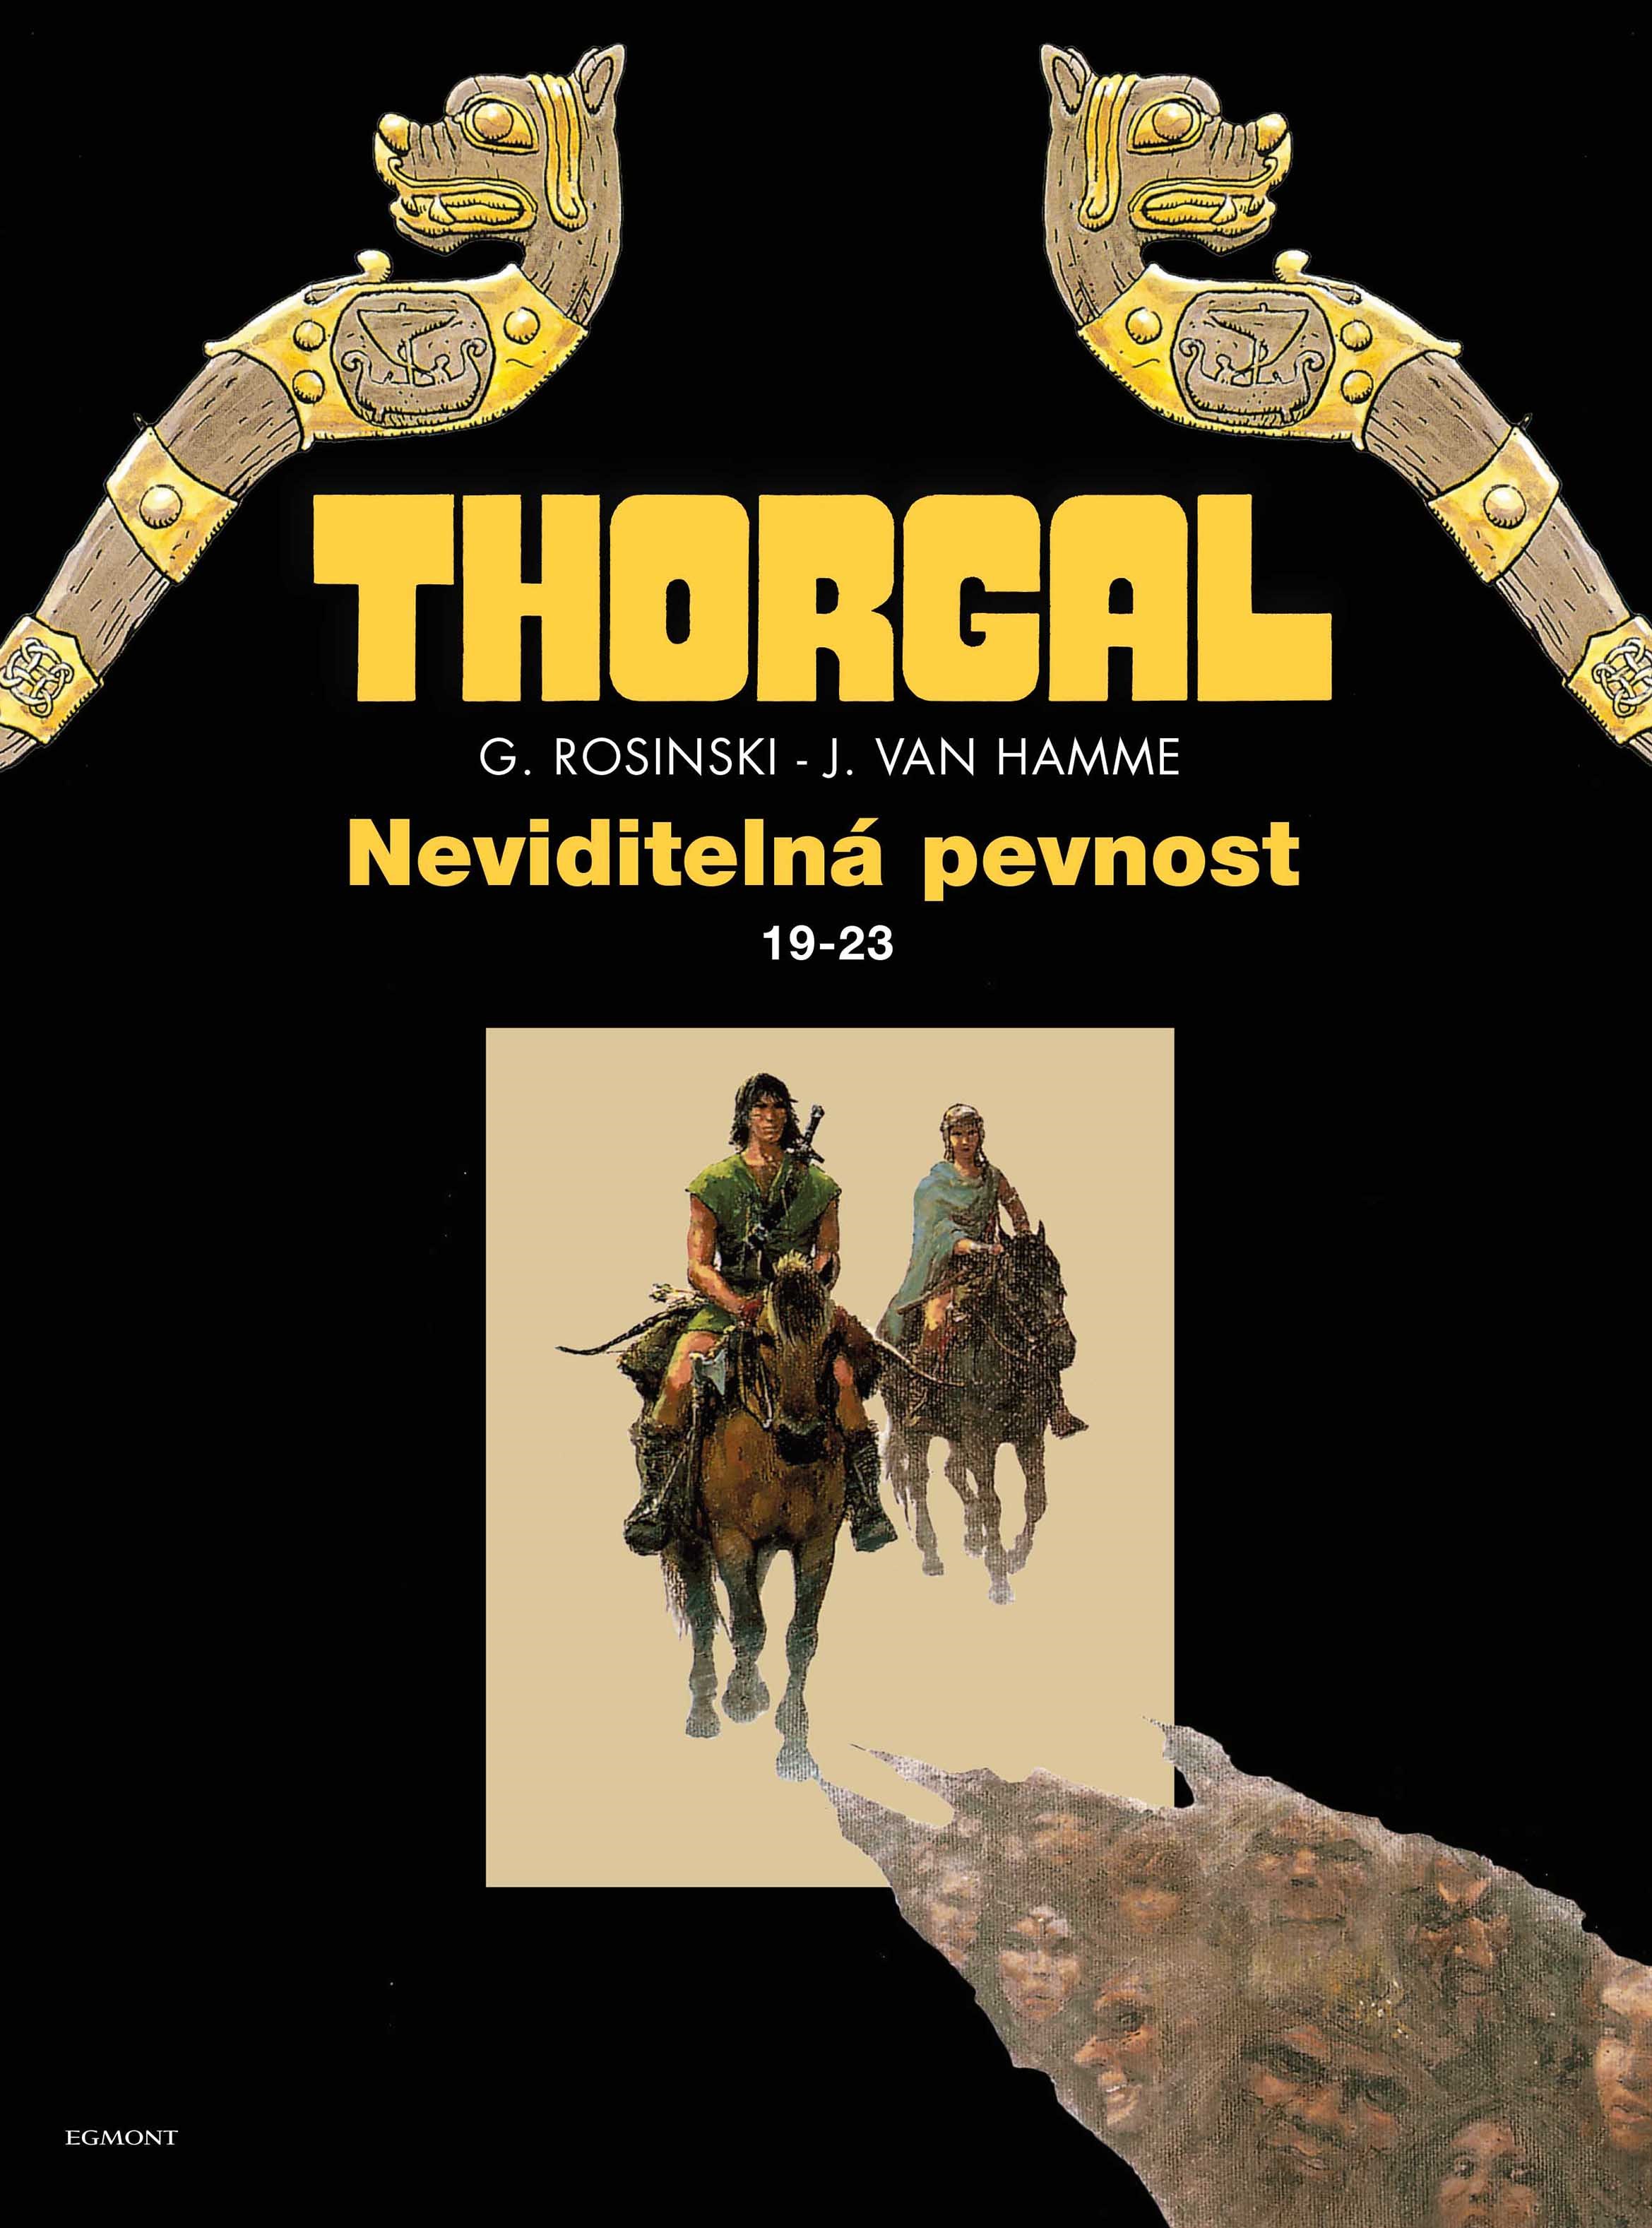 Thorgal: Neviditelná pevnost (omnibus 19-23)